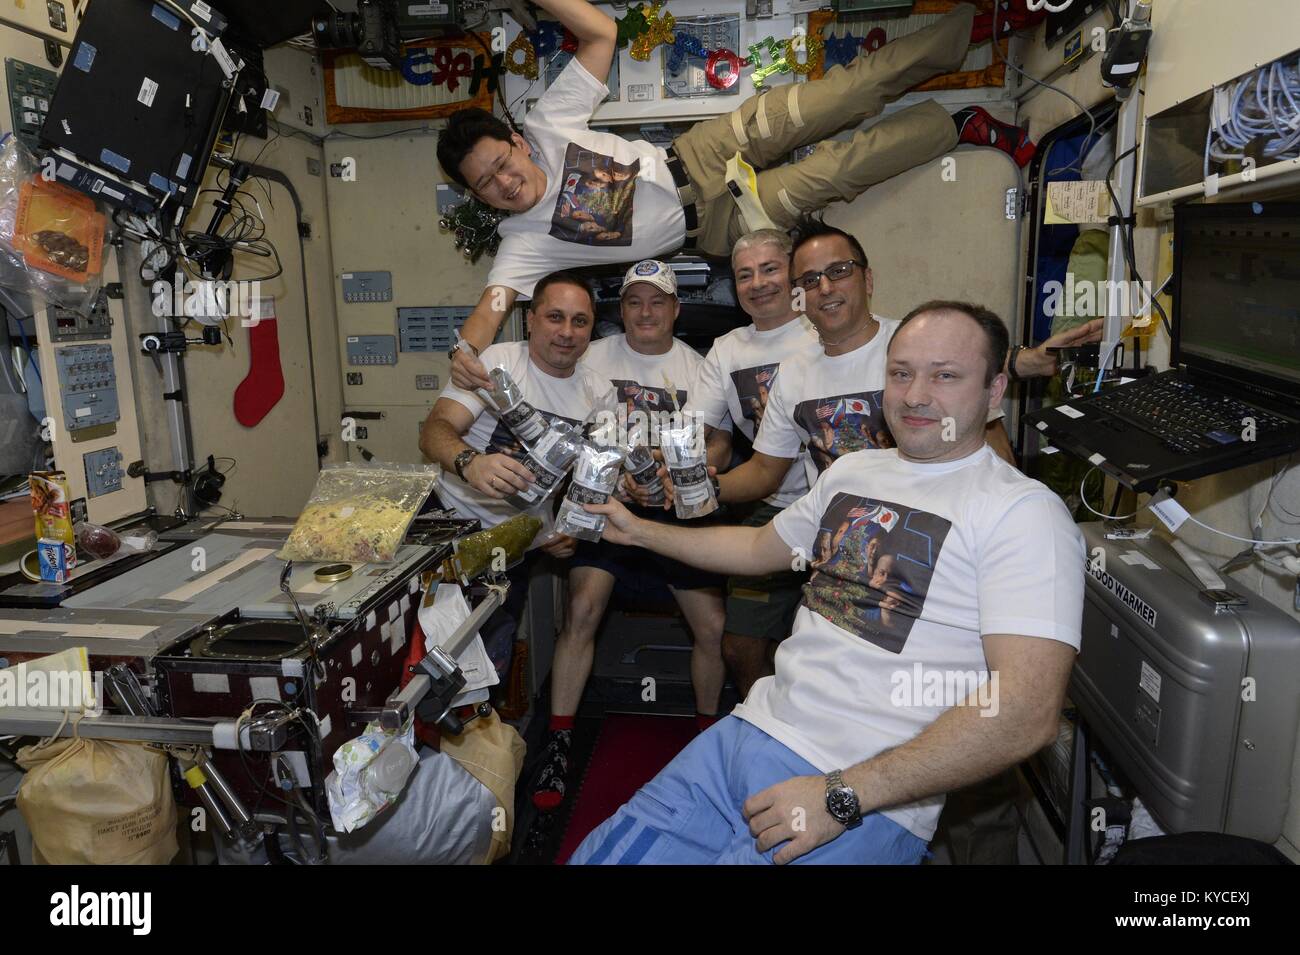 Expedition 54 Crew Mitglieder feiern das neue Jahr an Bord der Internationalen Raumstation am 1. Januar 2018 in der Erdumlaufbahn. Mannschaft von Links nach Rechts: JAXA Astronauten Norishige Kanai, Roskosmos Kosmonaut Anton Shkaplerov, NASA-Astronauten Scott Prickeln, Mark Vande Hei, Joe Acaba und Roskosmos Kosmonauten Alexander Misurkin. Stockfoto